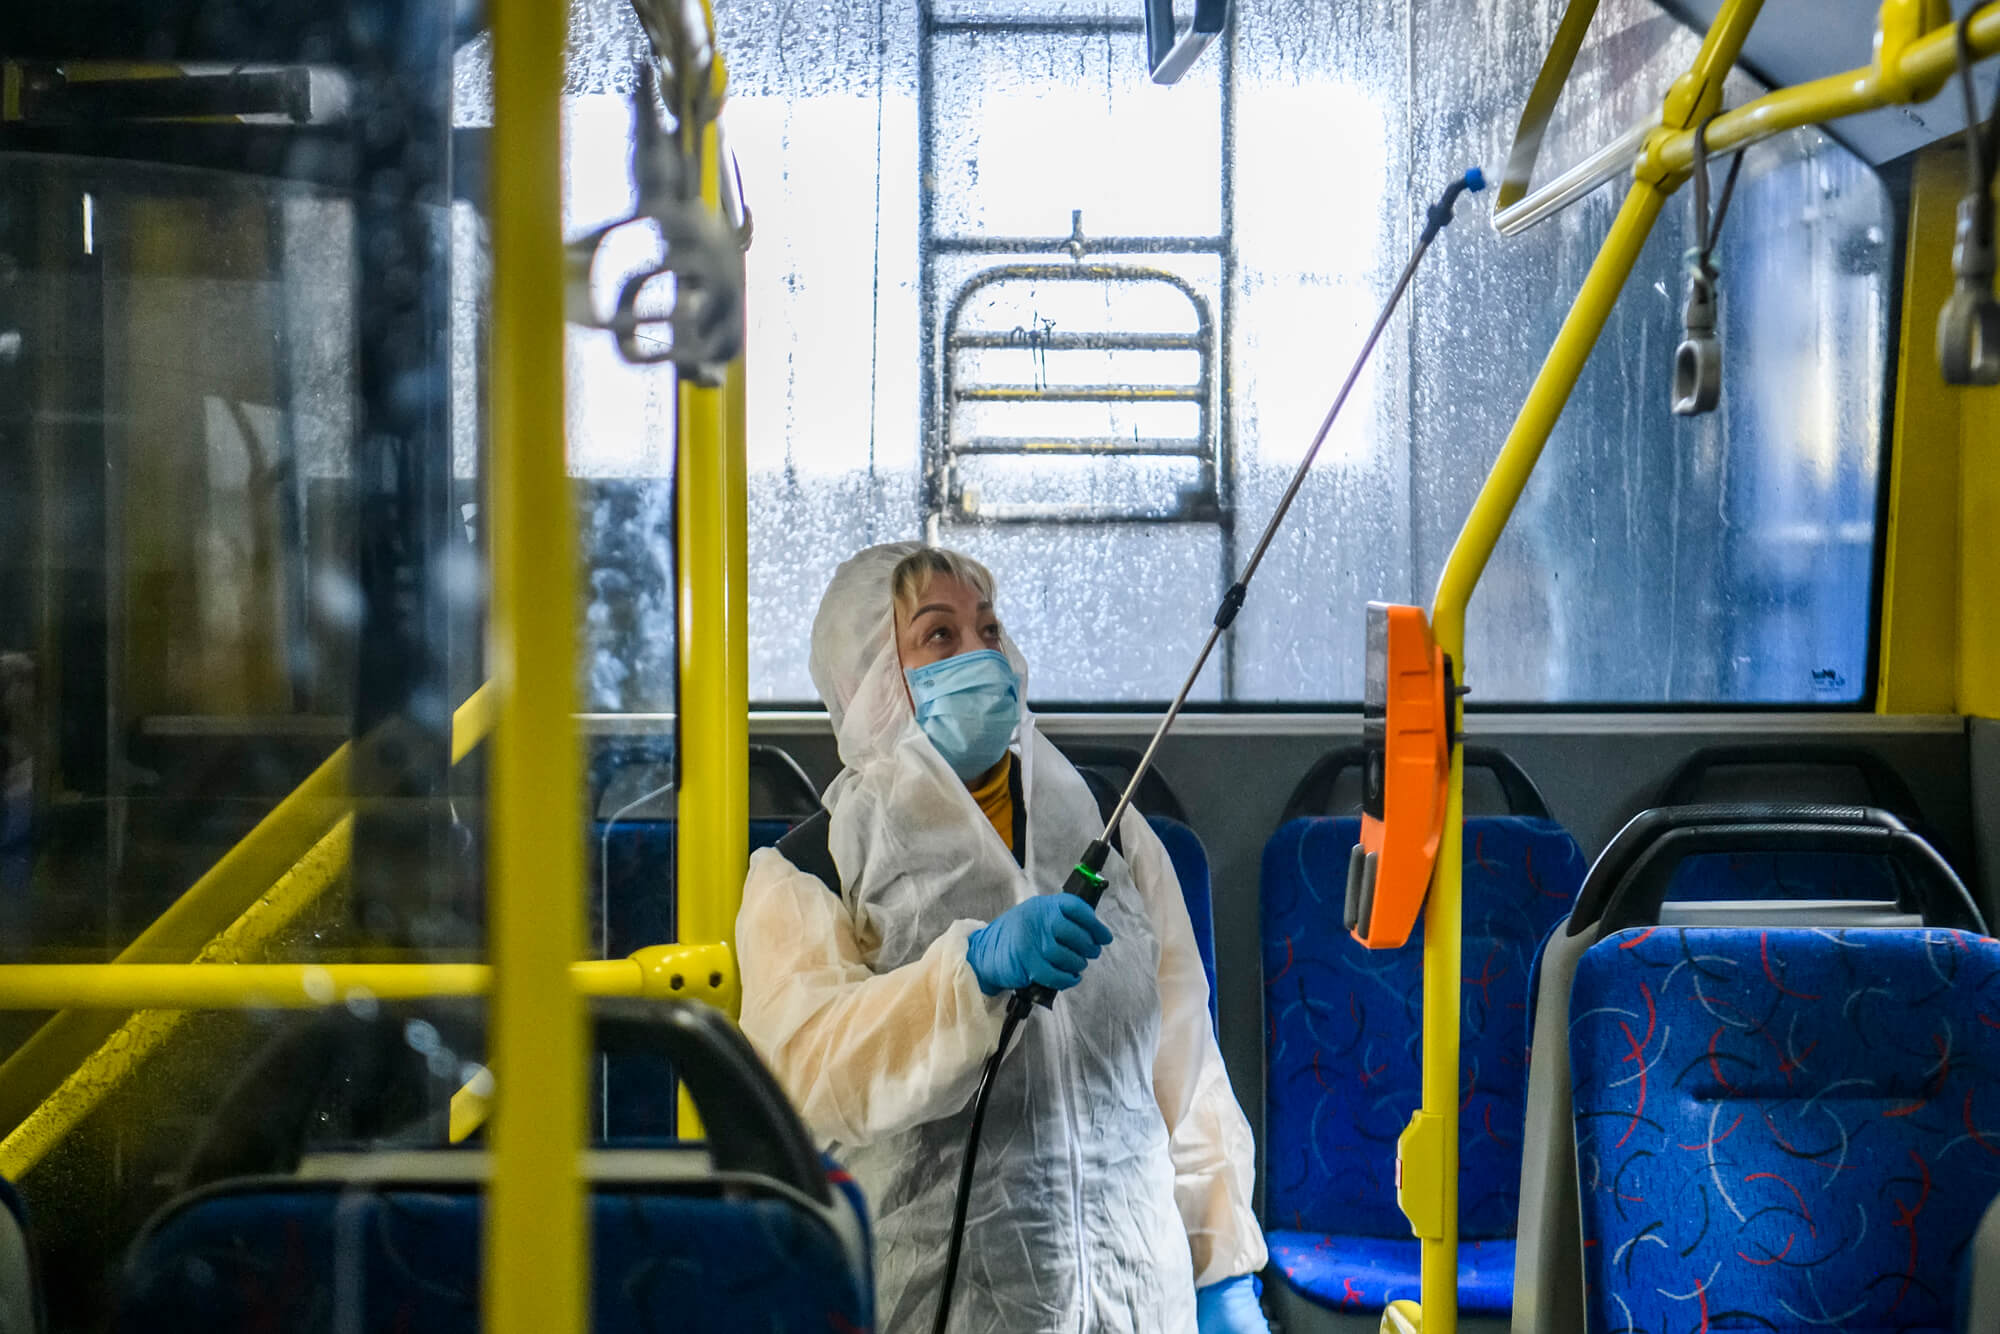 Does Ukraine Adequately Respond to the Coronavirus Epidemic?